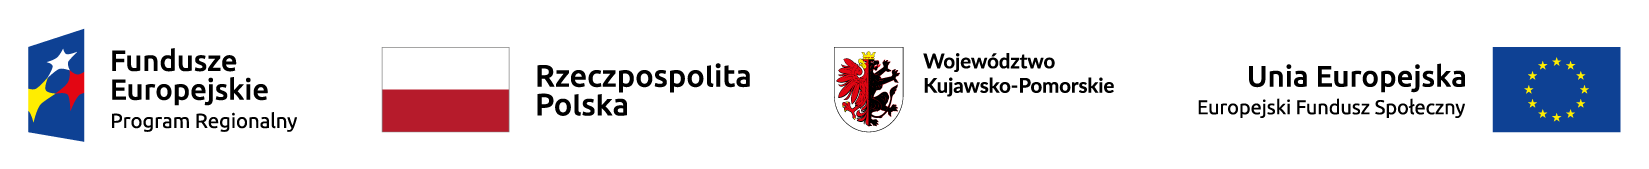 Logotypy Funduszy Europejskich, flaga Polski i UE